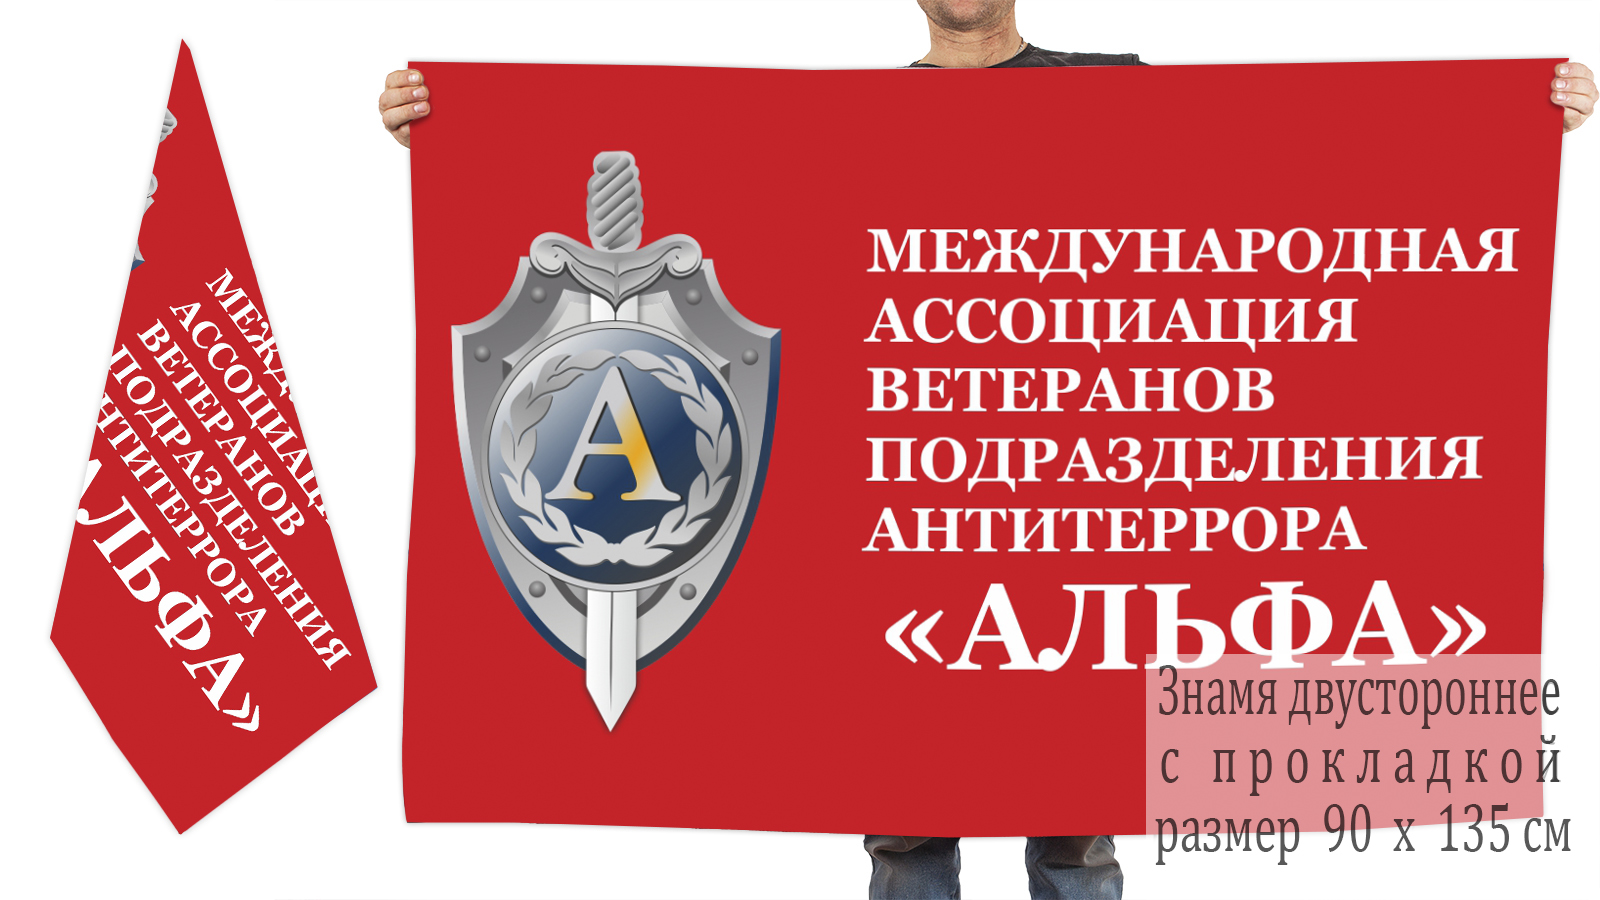 Двусторонний флаг ветеранов подразделения антитеррора "Альфа"